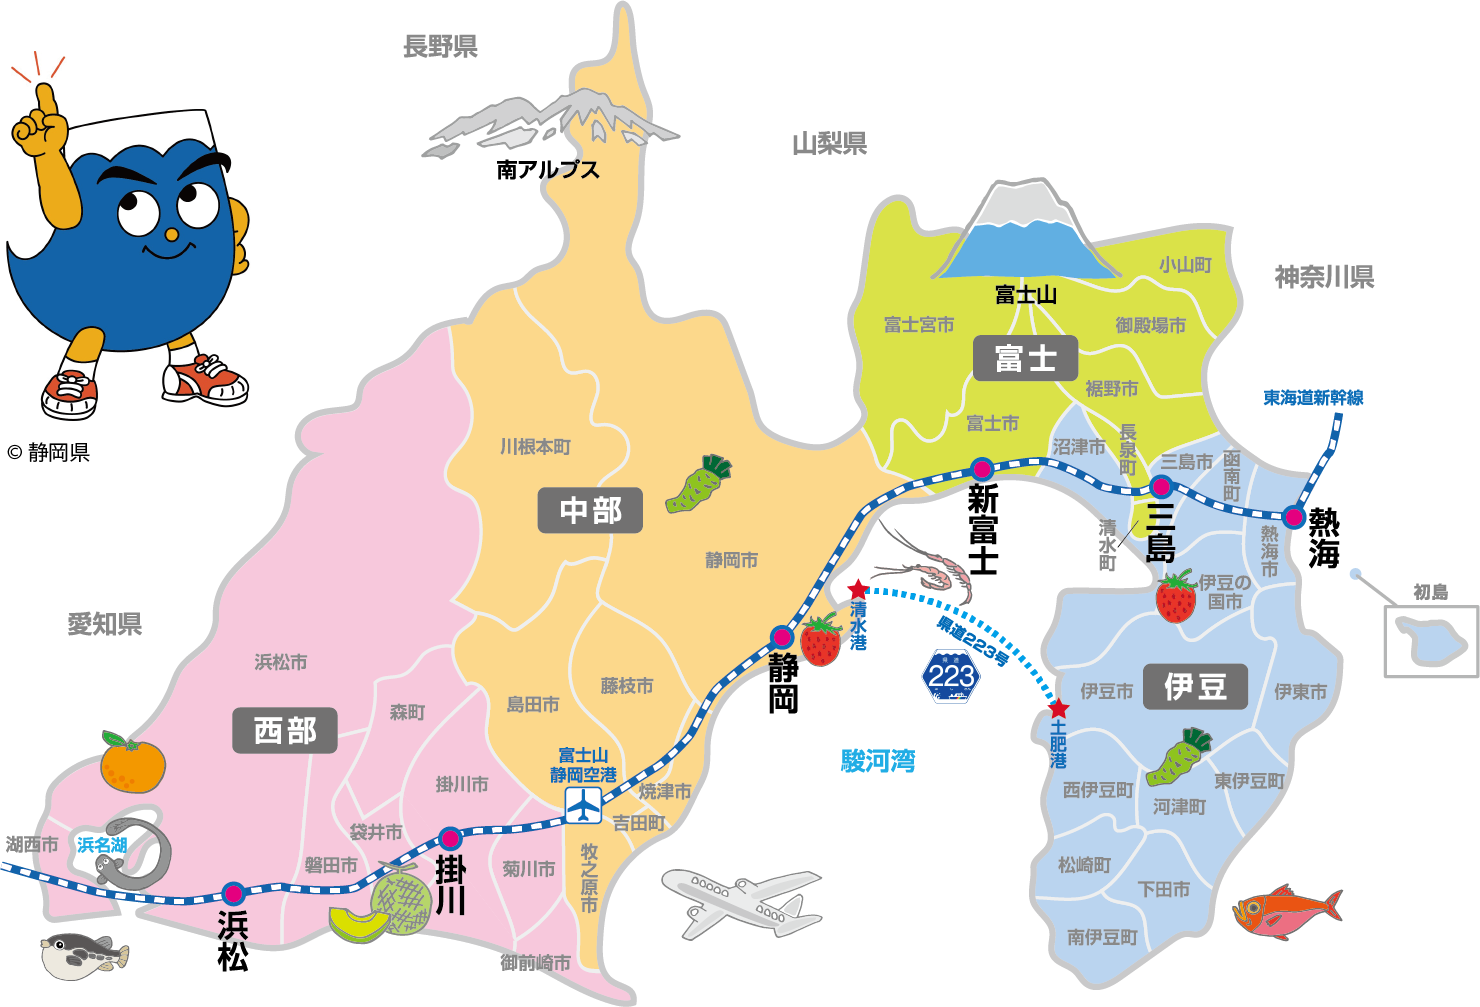 静岡県観光マップ